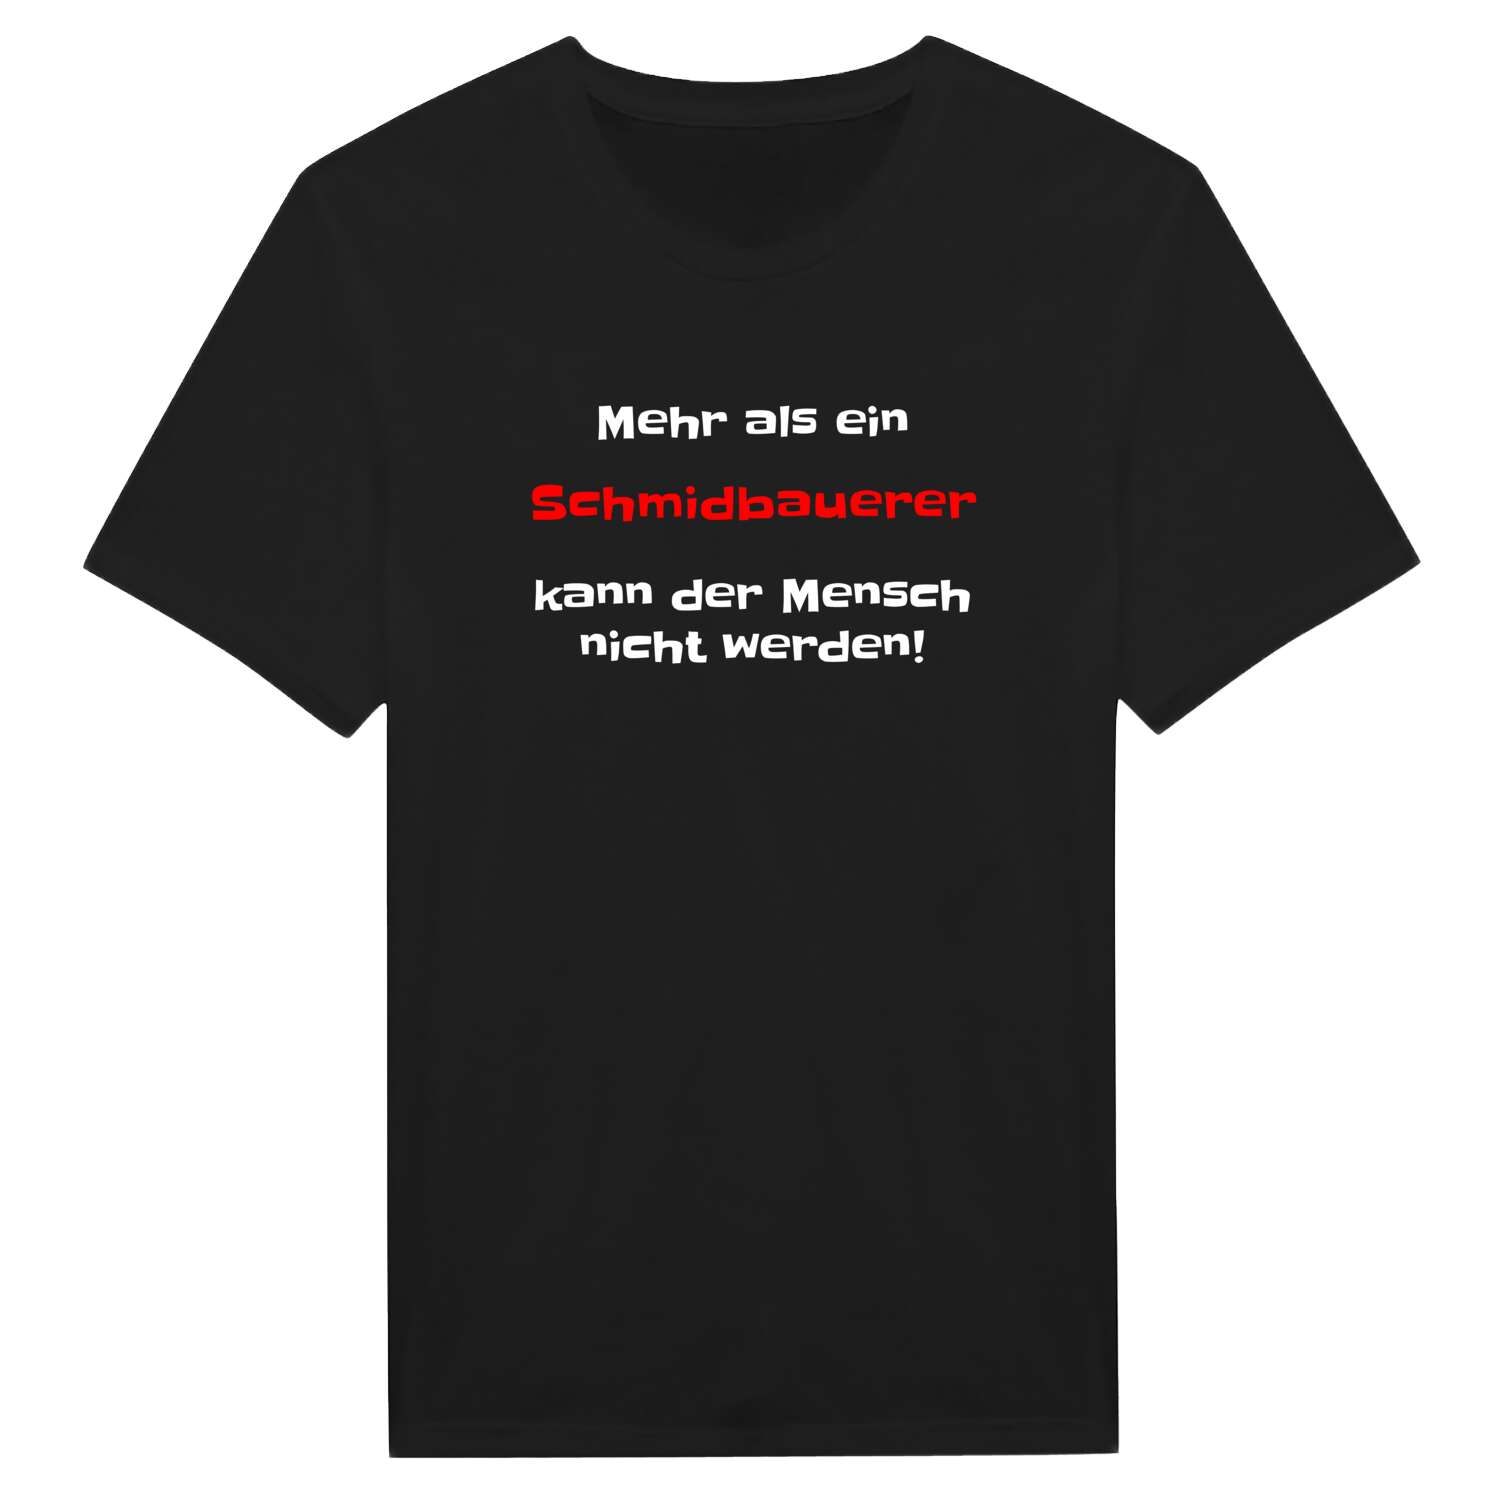 Schmidbauer T-Shirt »Mehr als ein«